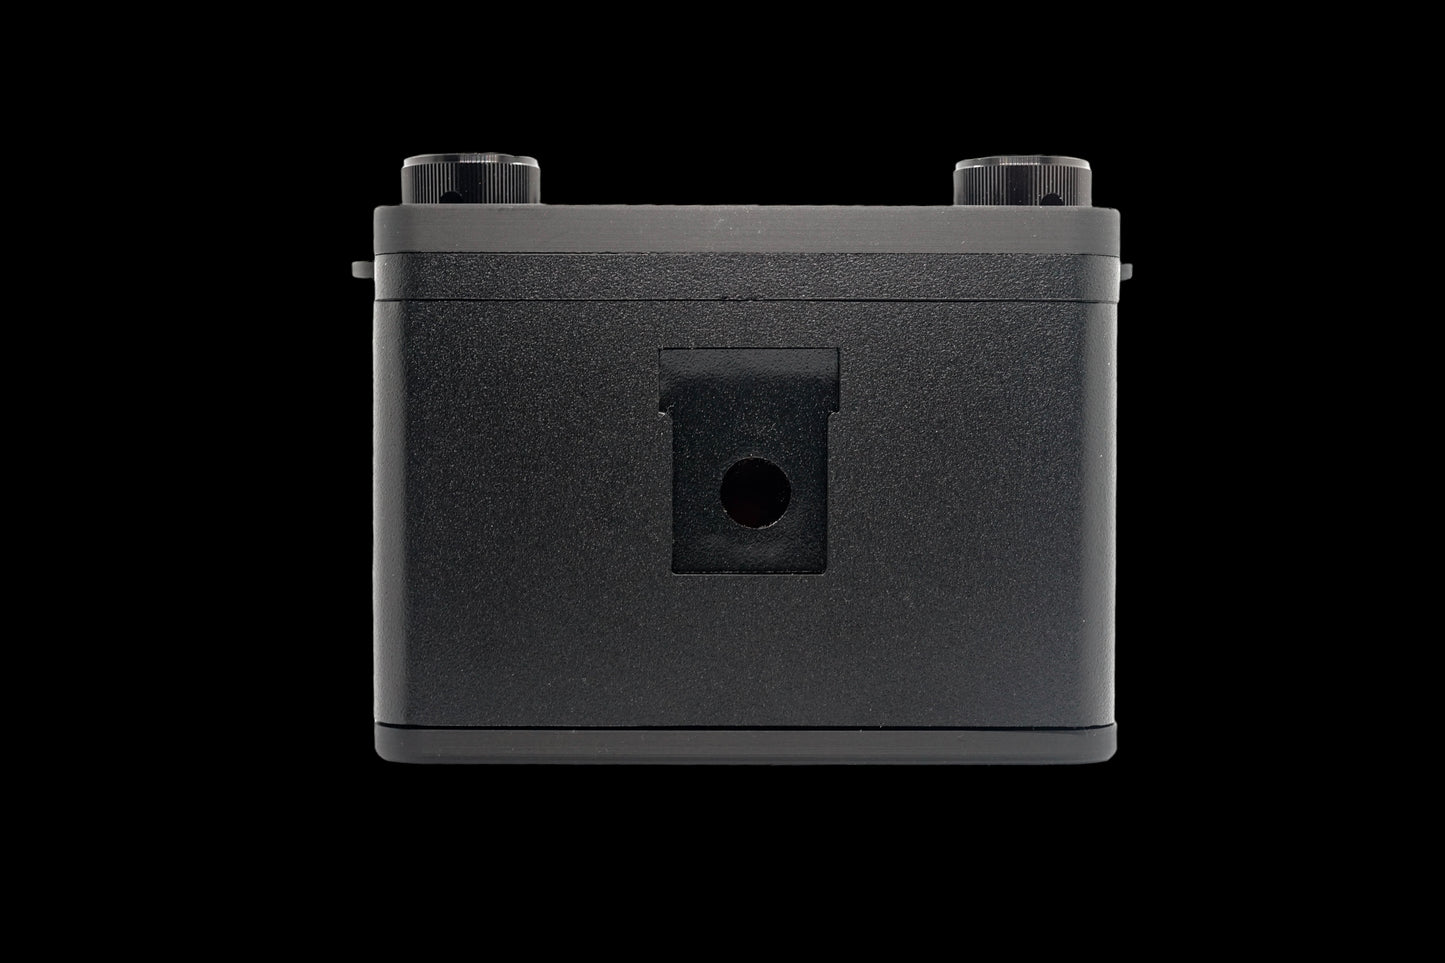 2024 Cube66 - Medium Format Pinhole Camera